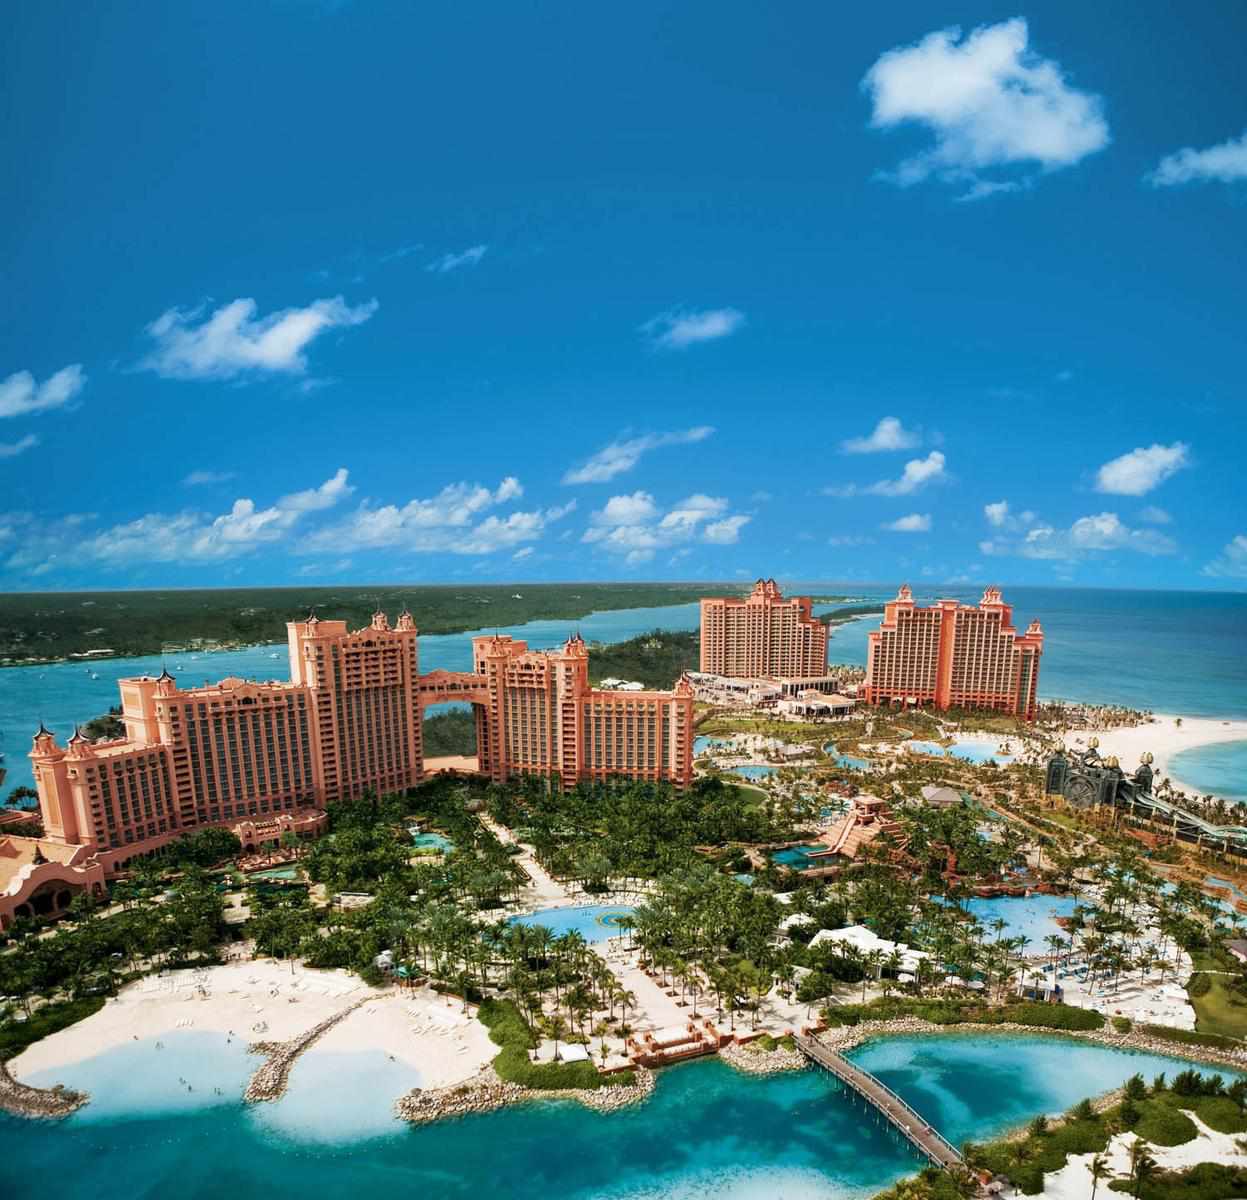 Atlantis Resort in Bahamas 2016